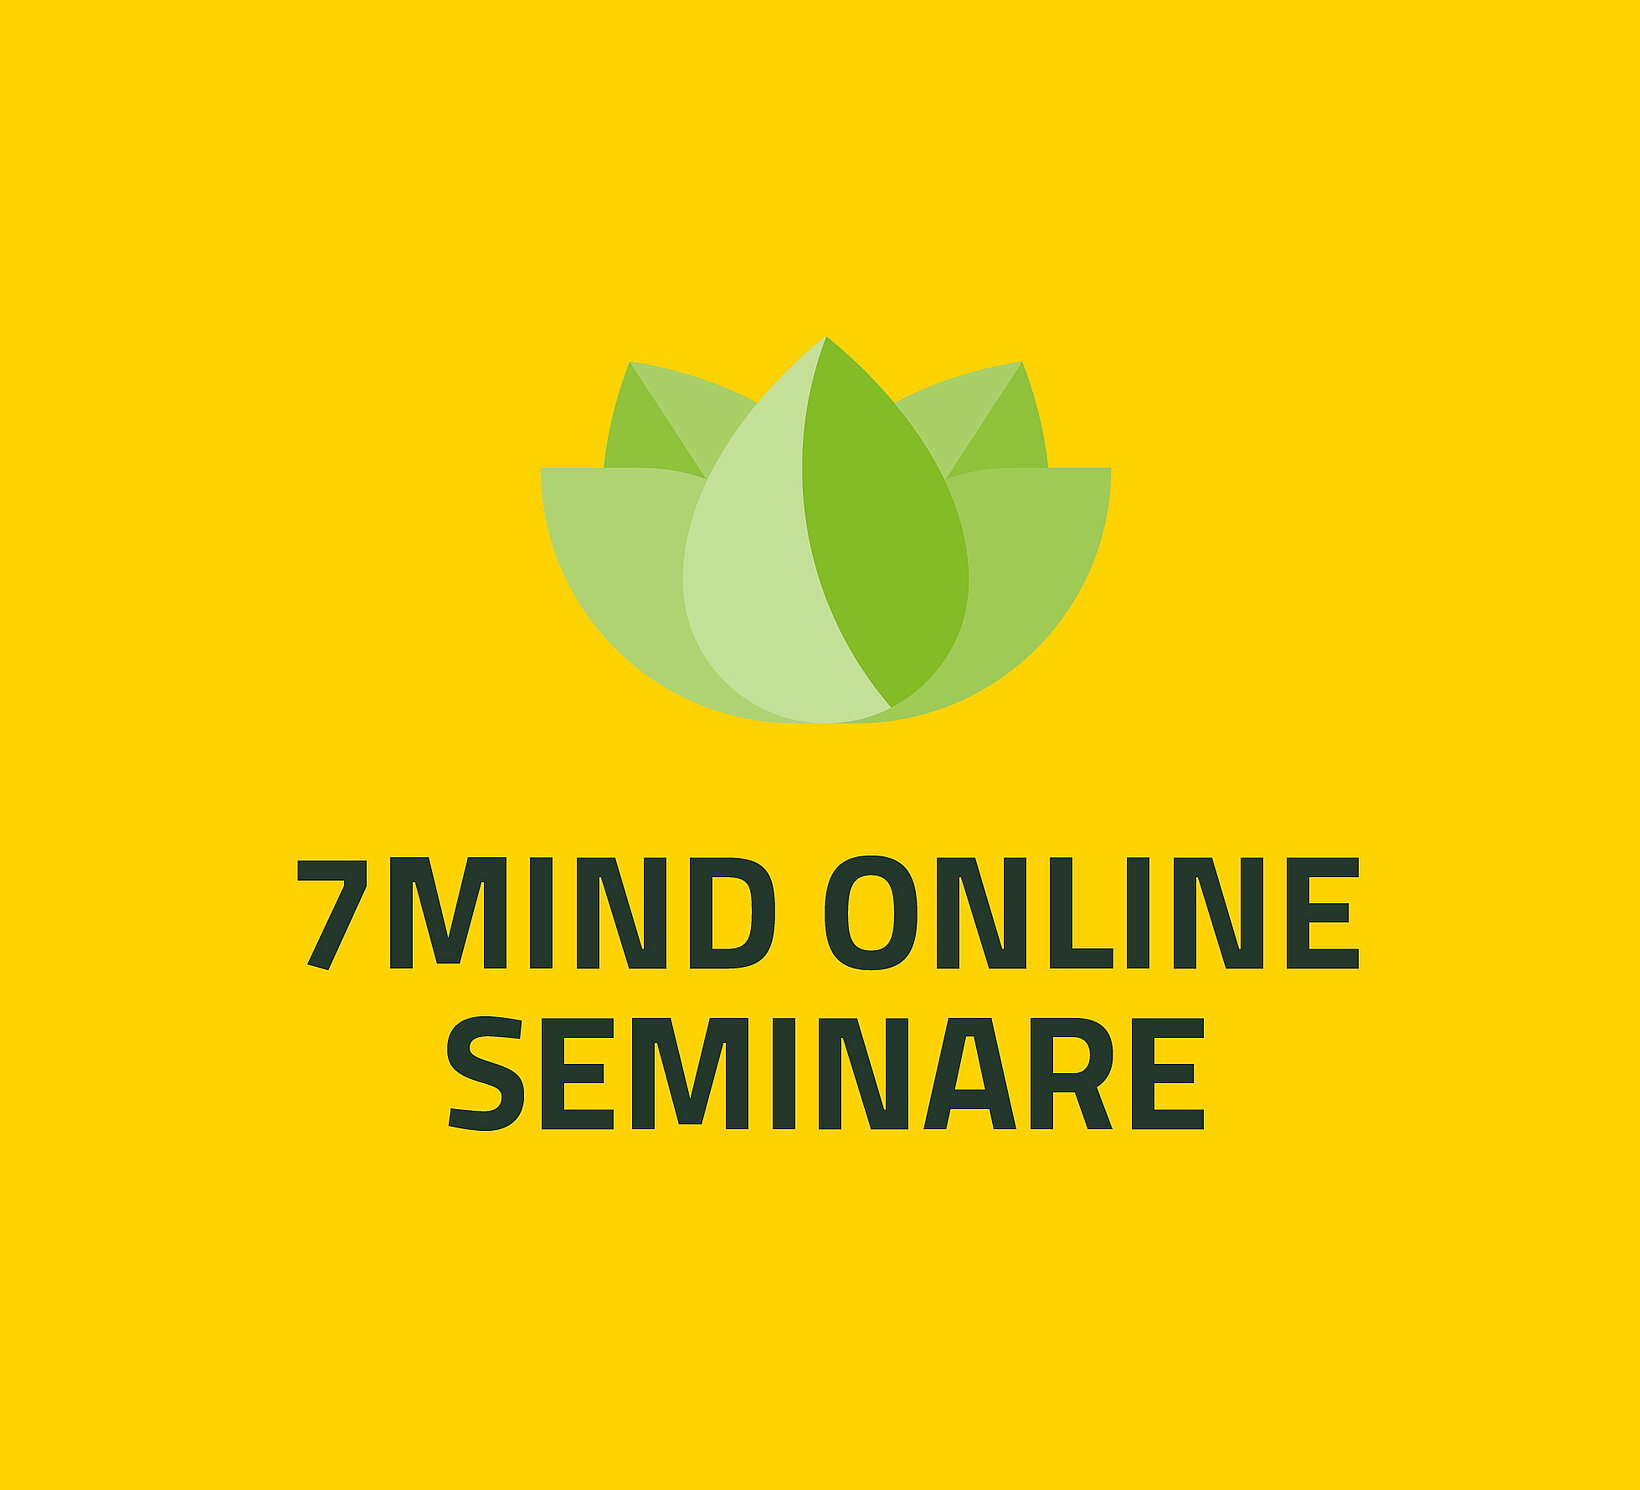 7Mind Online Seminar